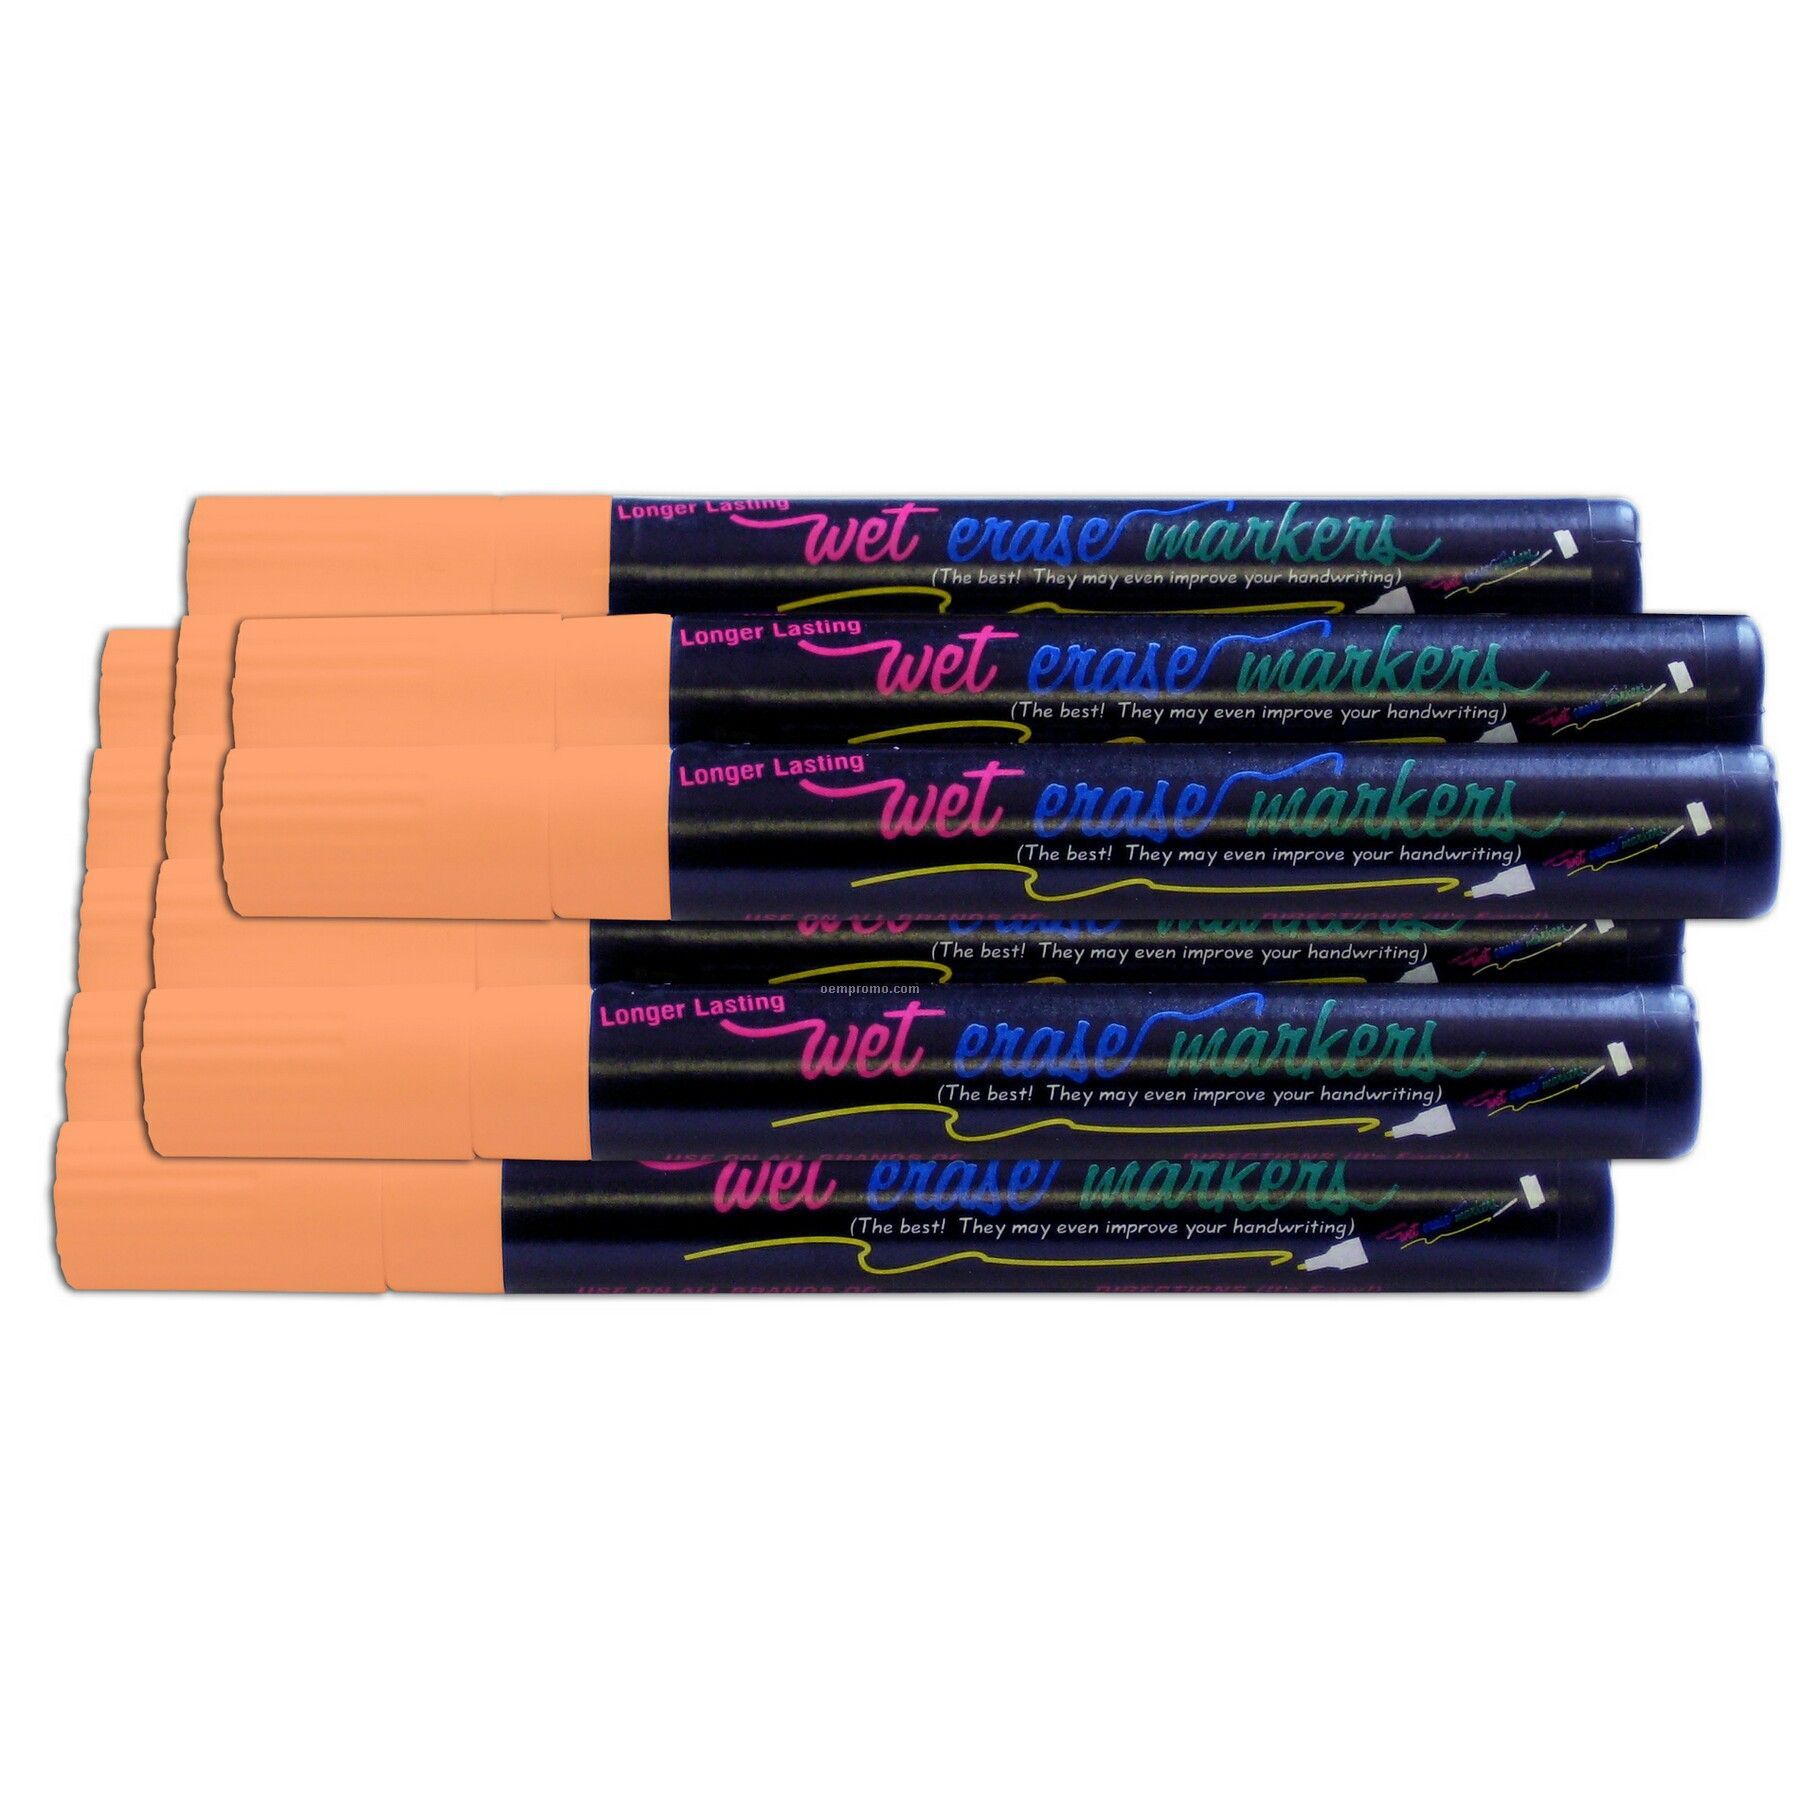 Wet Erase Marker Set - Orange (12 Pack)